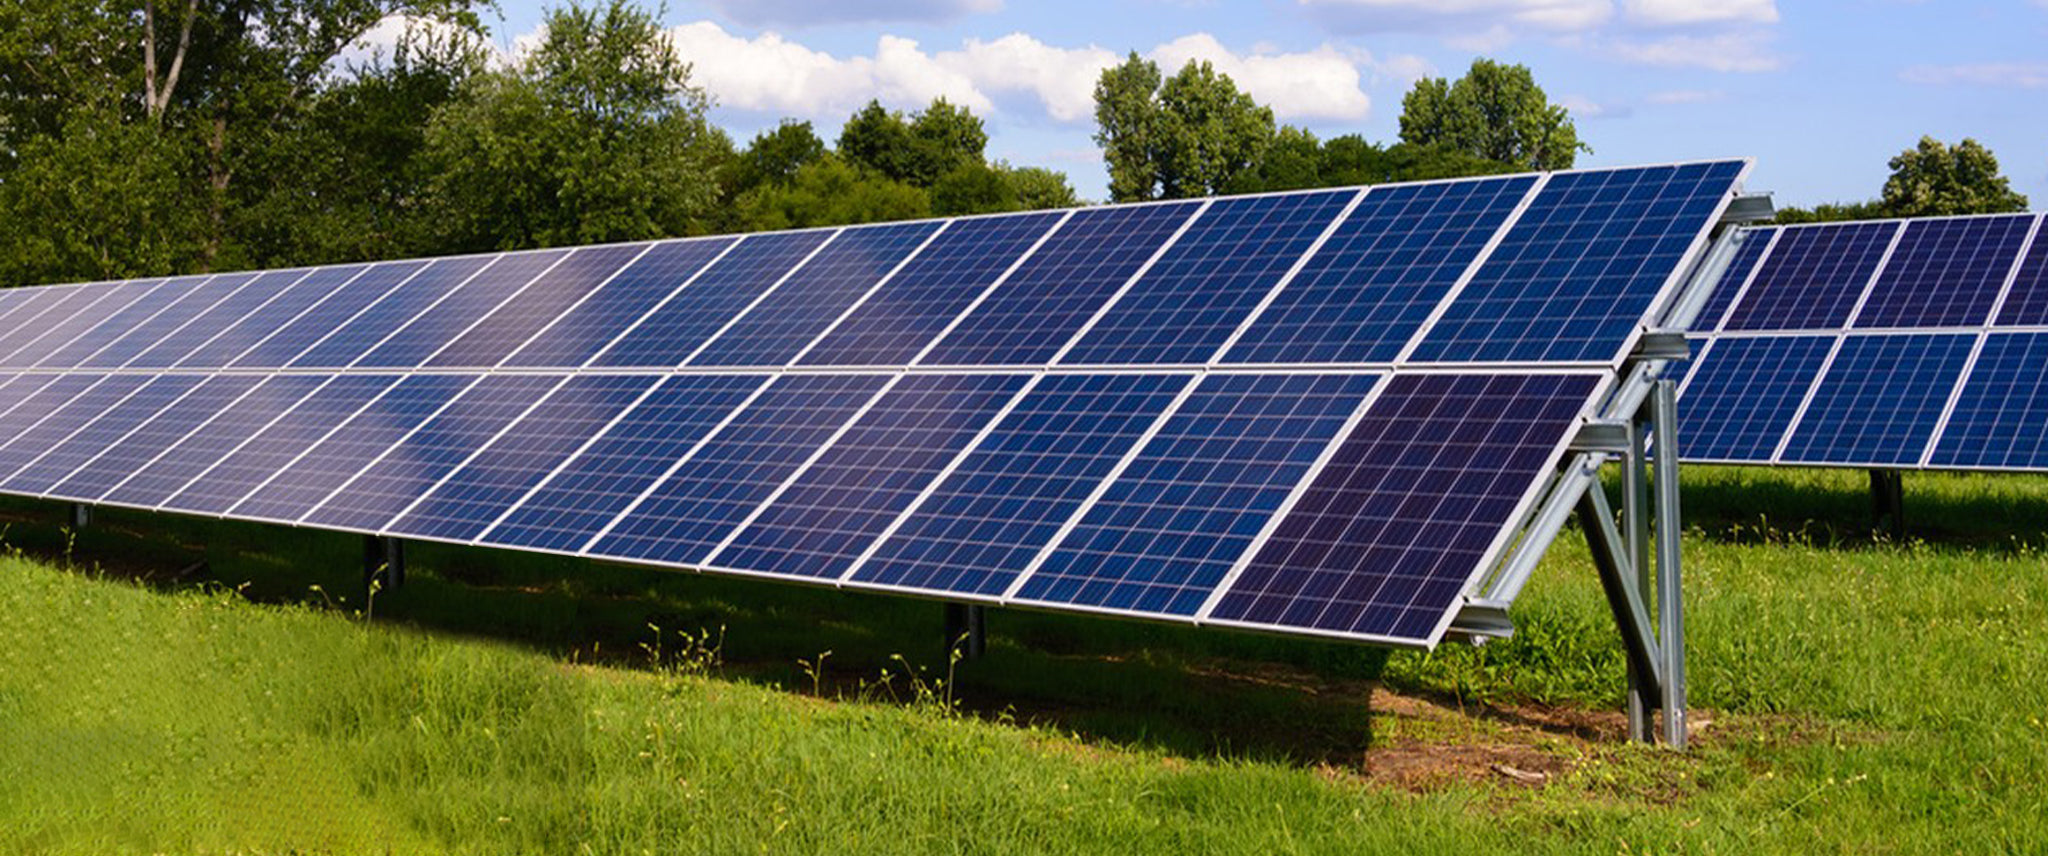 wiser energy solar panels